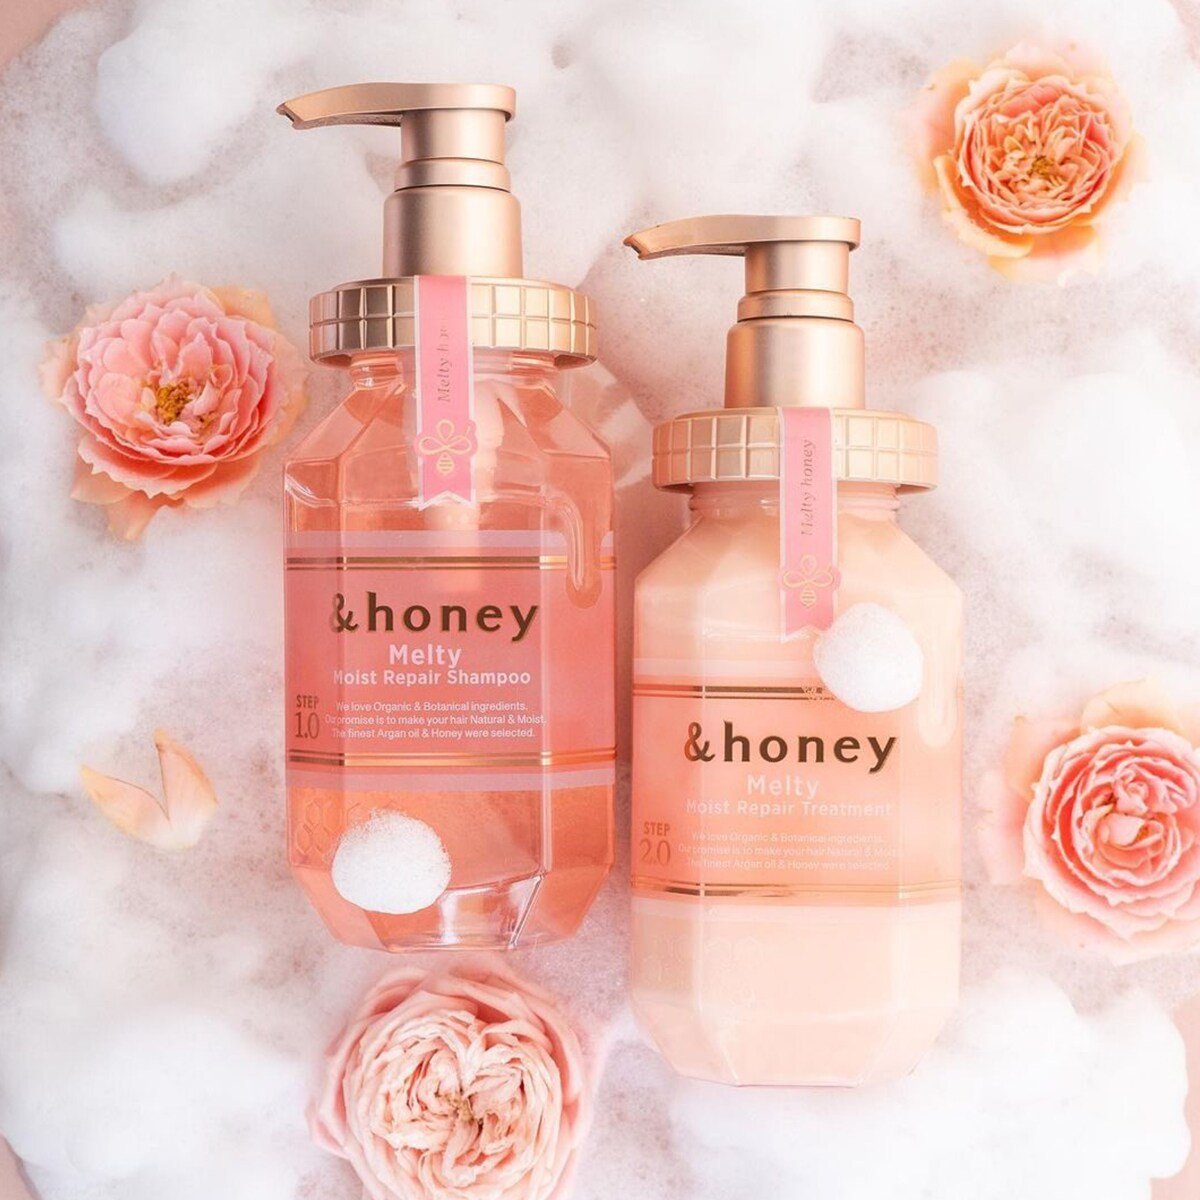 &honey Melty Moist Repair Shampoo 1.0 - &honey | Kiokii and...